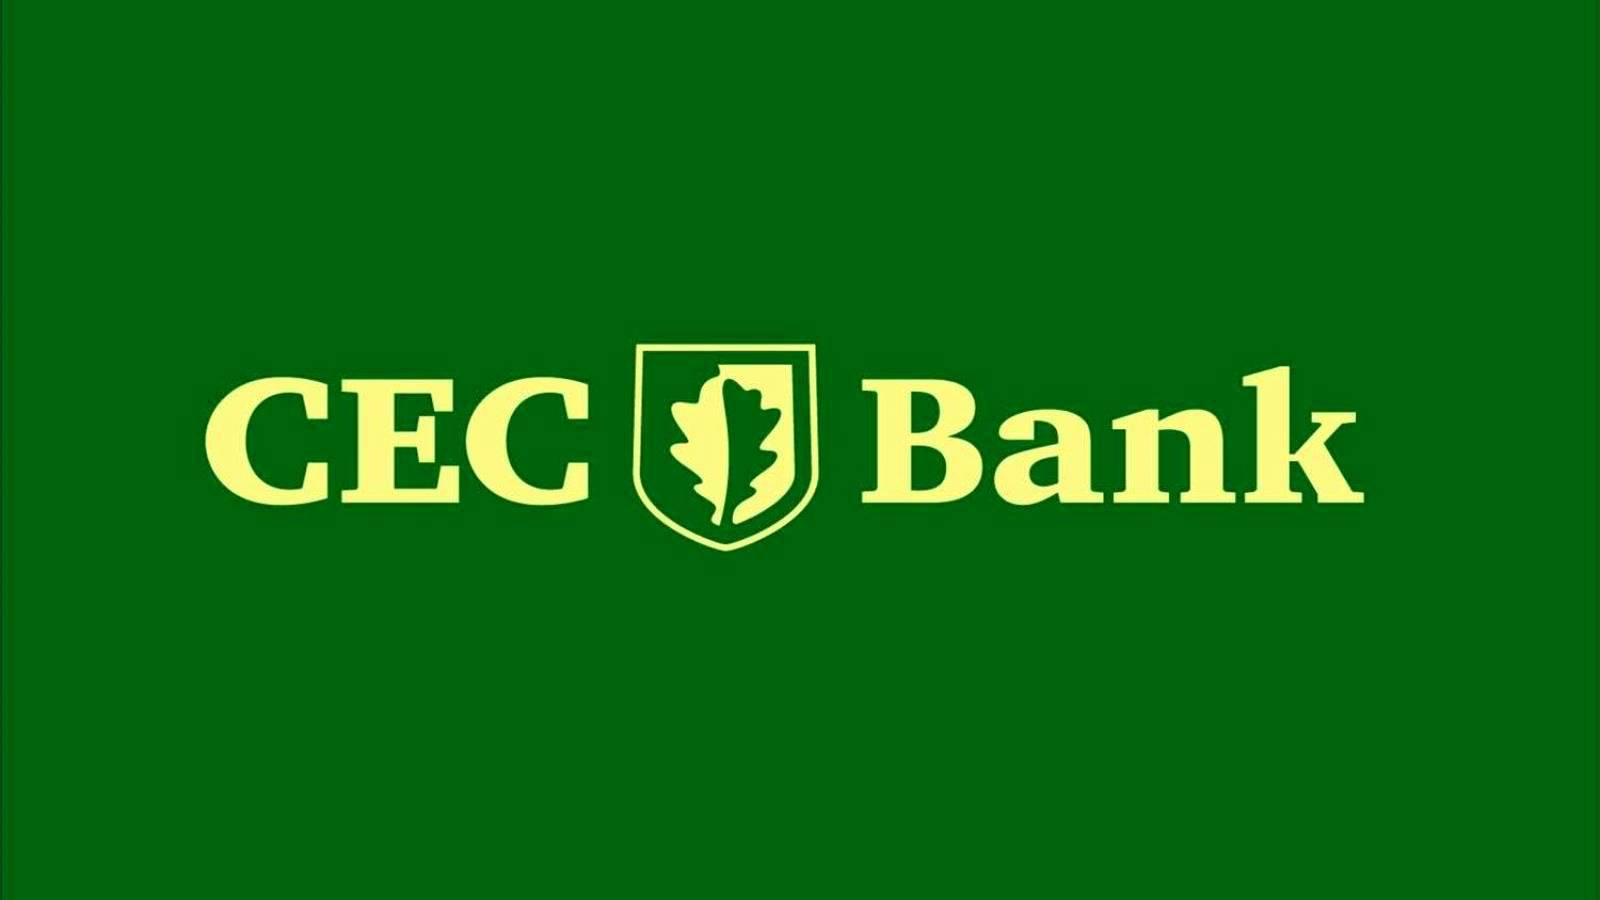 CEC Bank Kommunikation med ett beslut som riktats till kundernas omedelbara uppmärksamhet